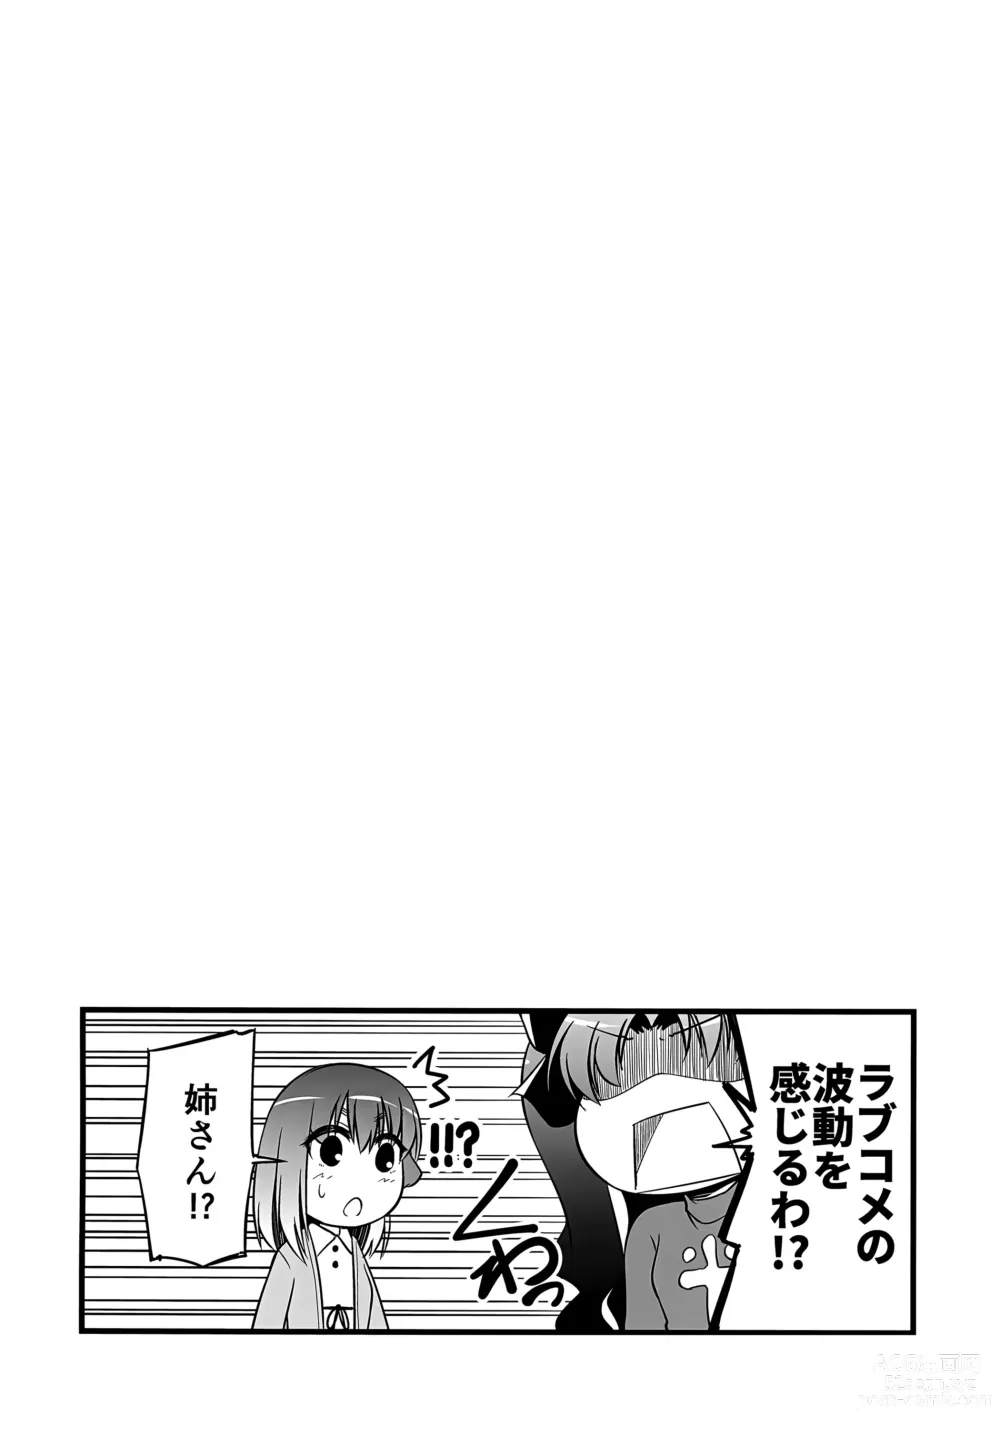 Page 27 of doujinshi Yappari Toradoshi Damono